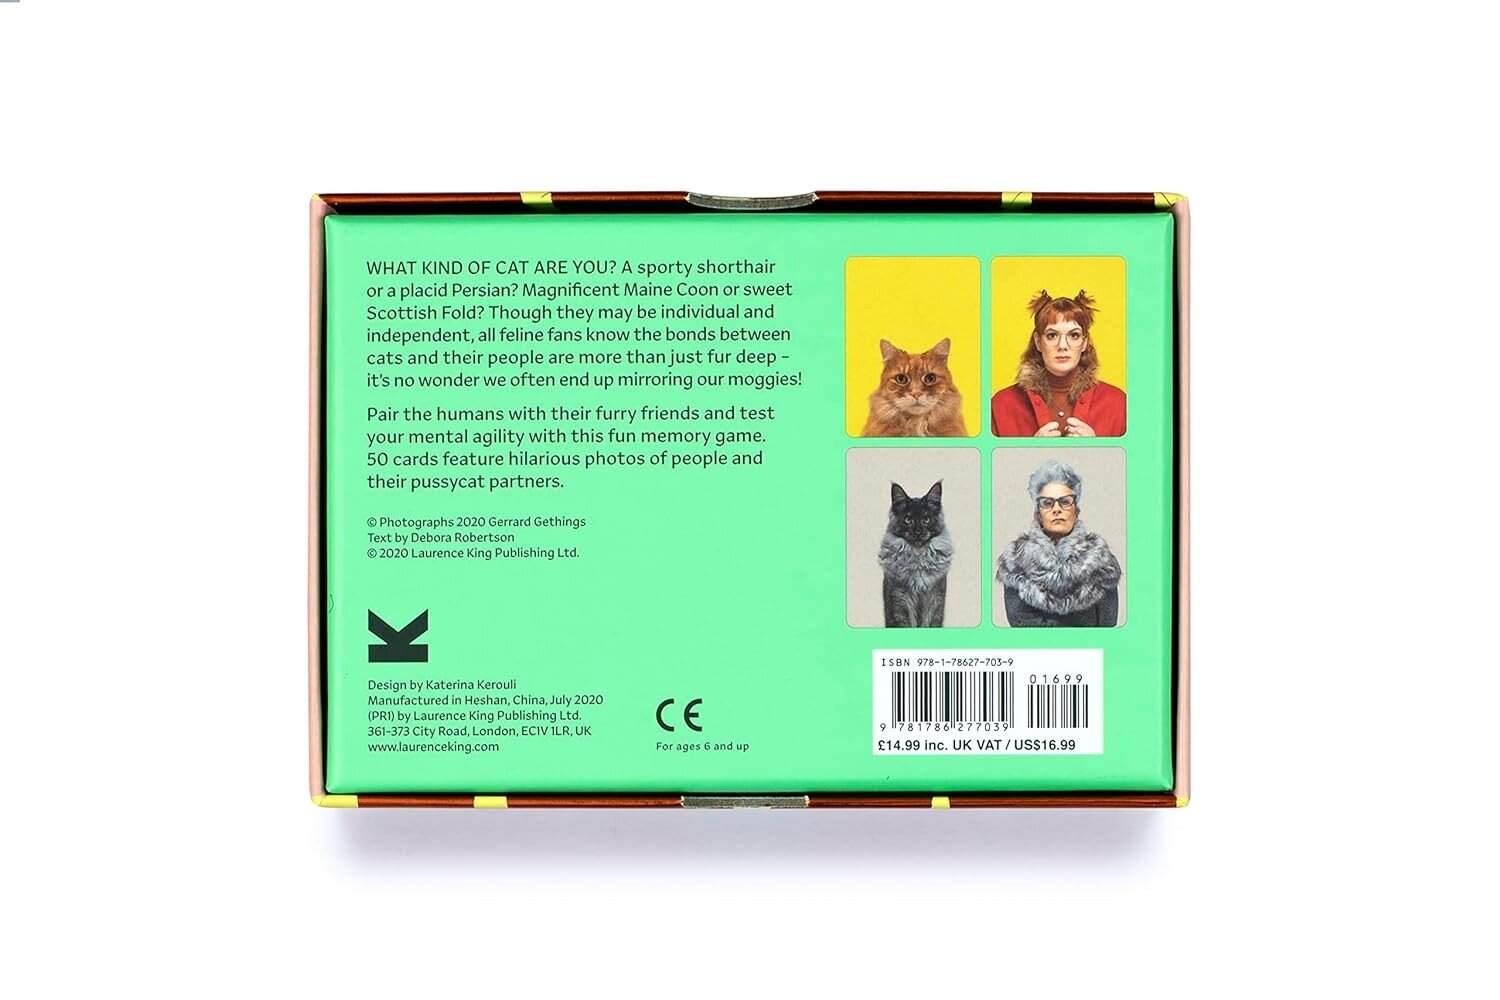 Atminties žaidimas Do You Look Like Your Cat? Laurence King Publishing kaina ir informacija | Stalo žaidimai, galvosūkiai | pigu.lt